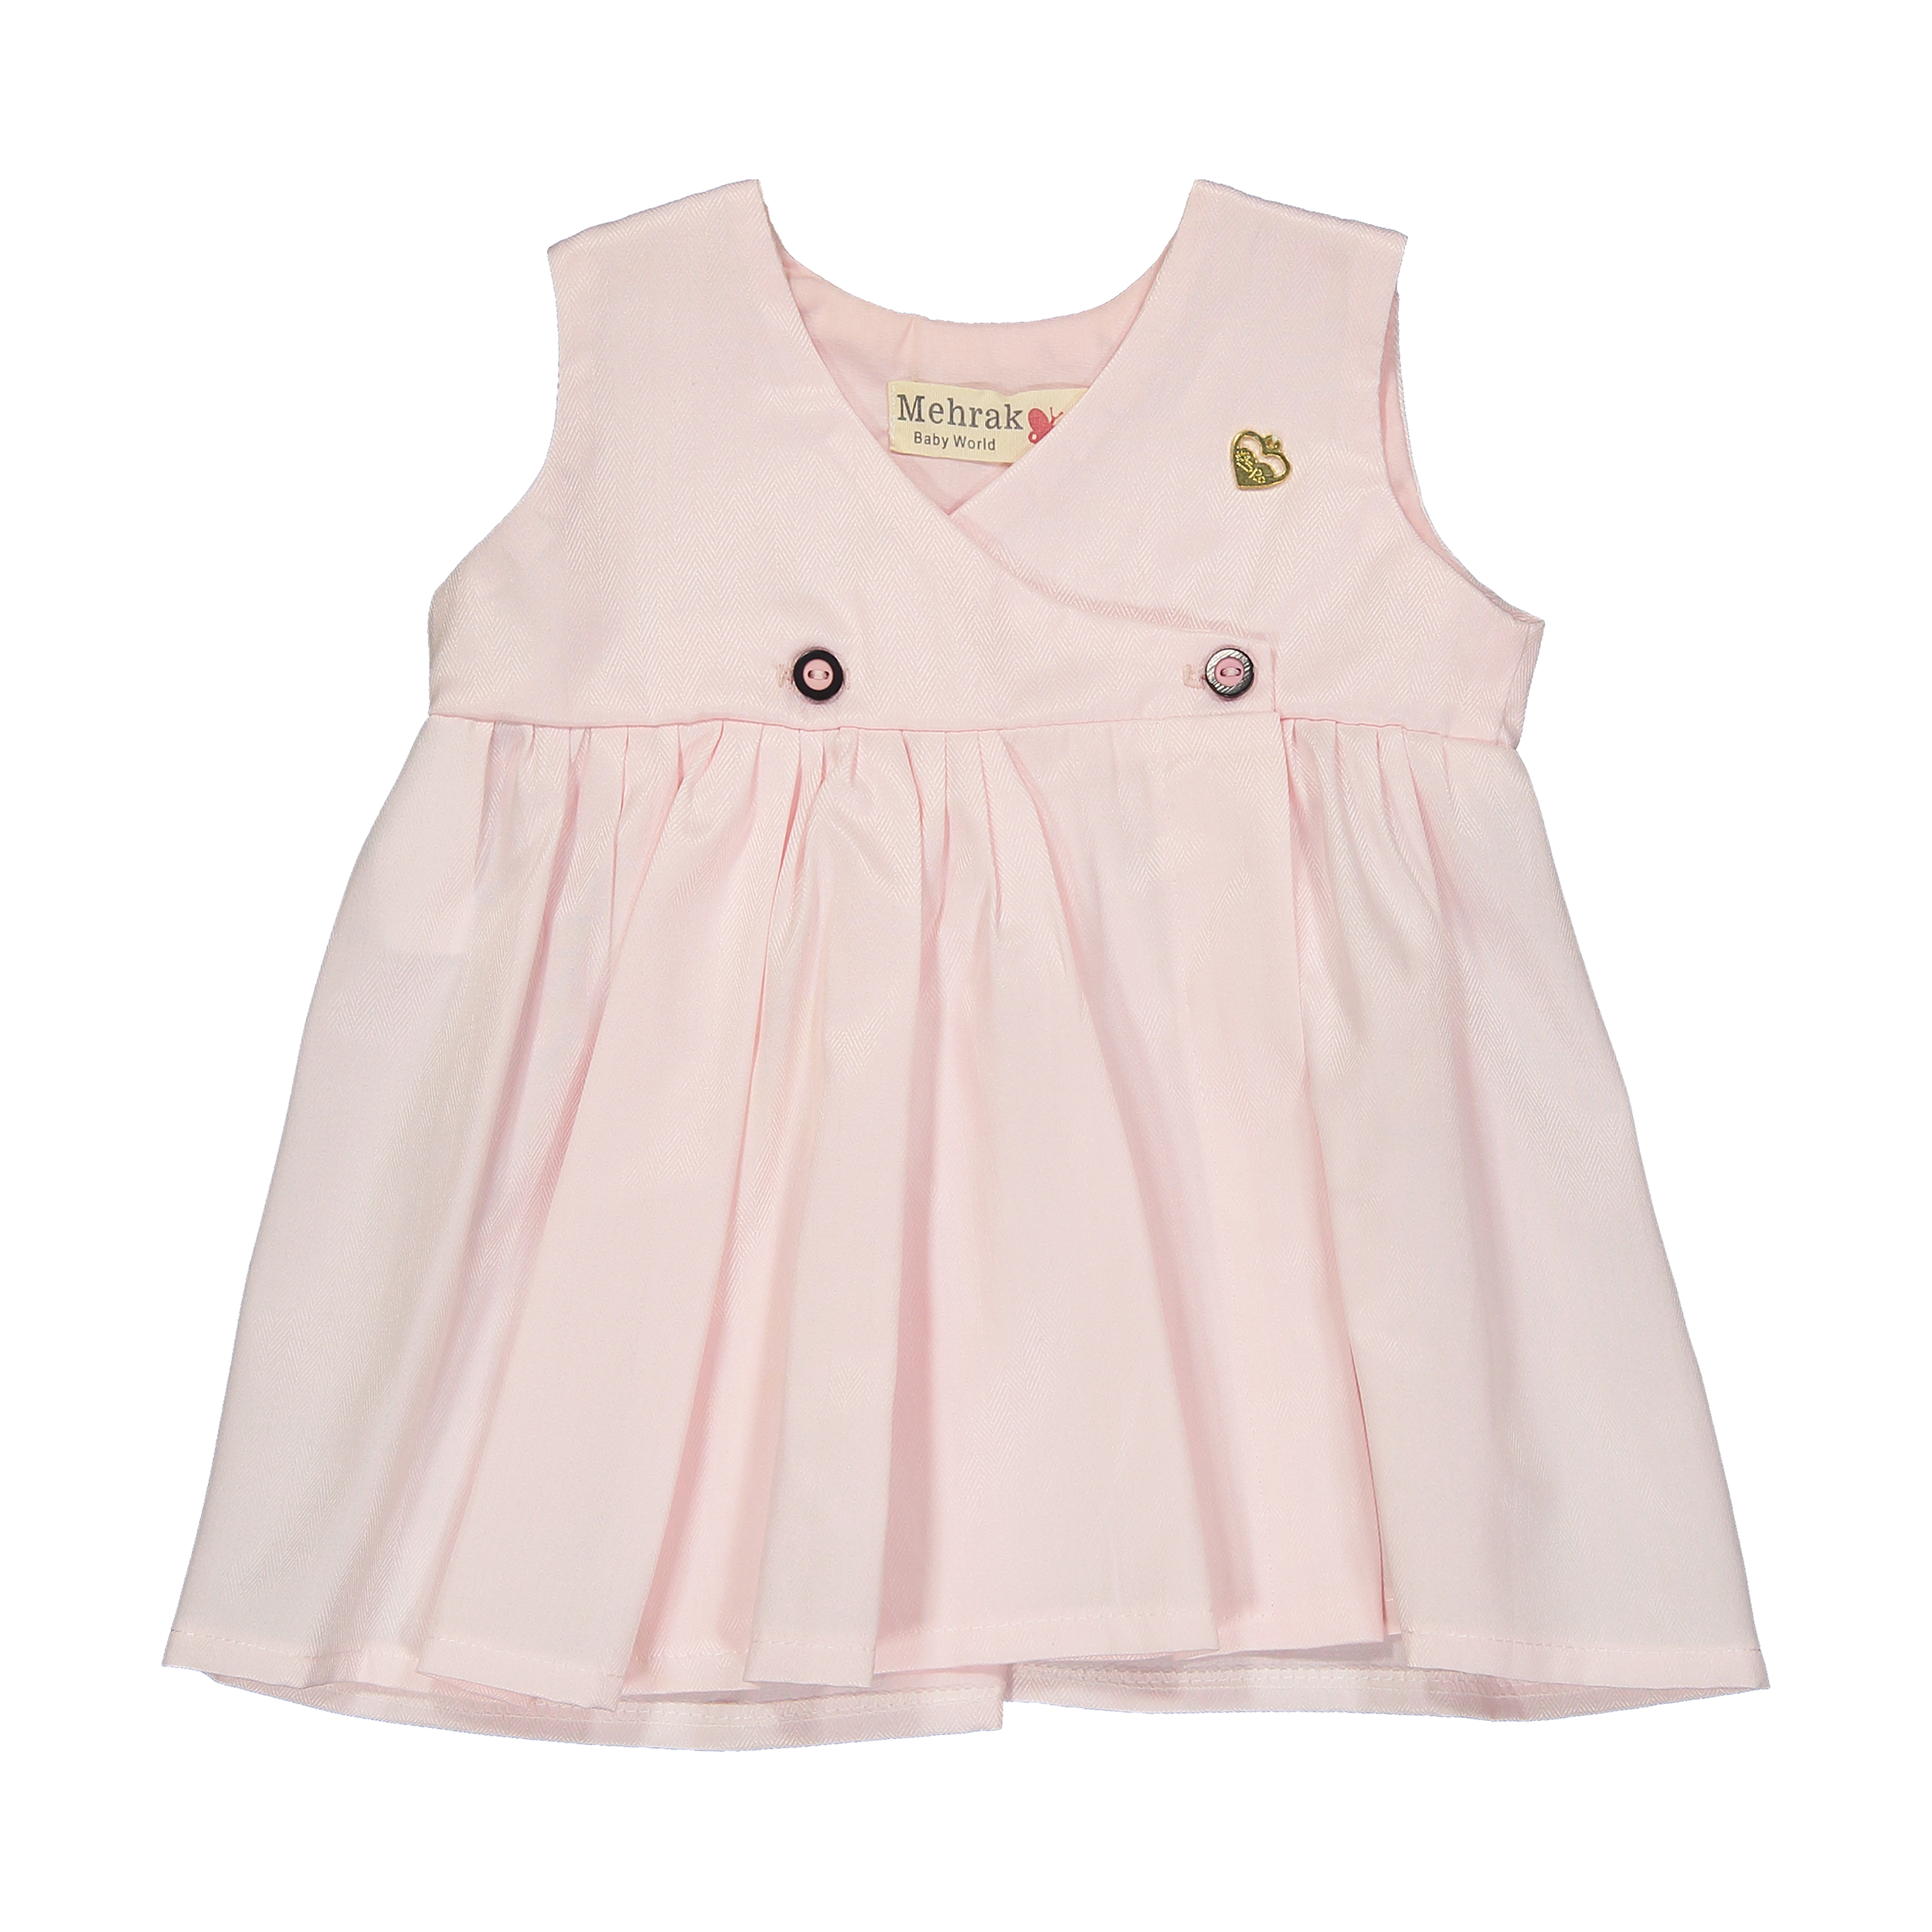 پیراهن نوزادی دخترانه مهرک مدل 1381140-8100